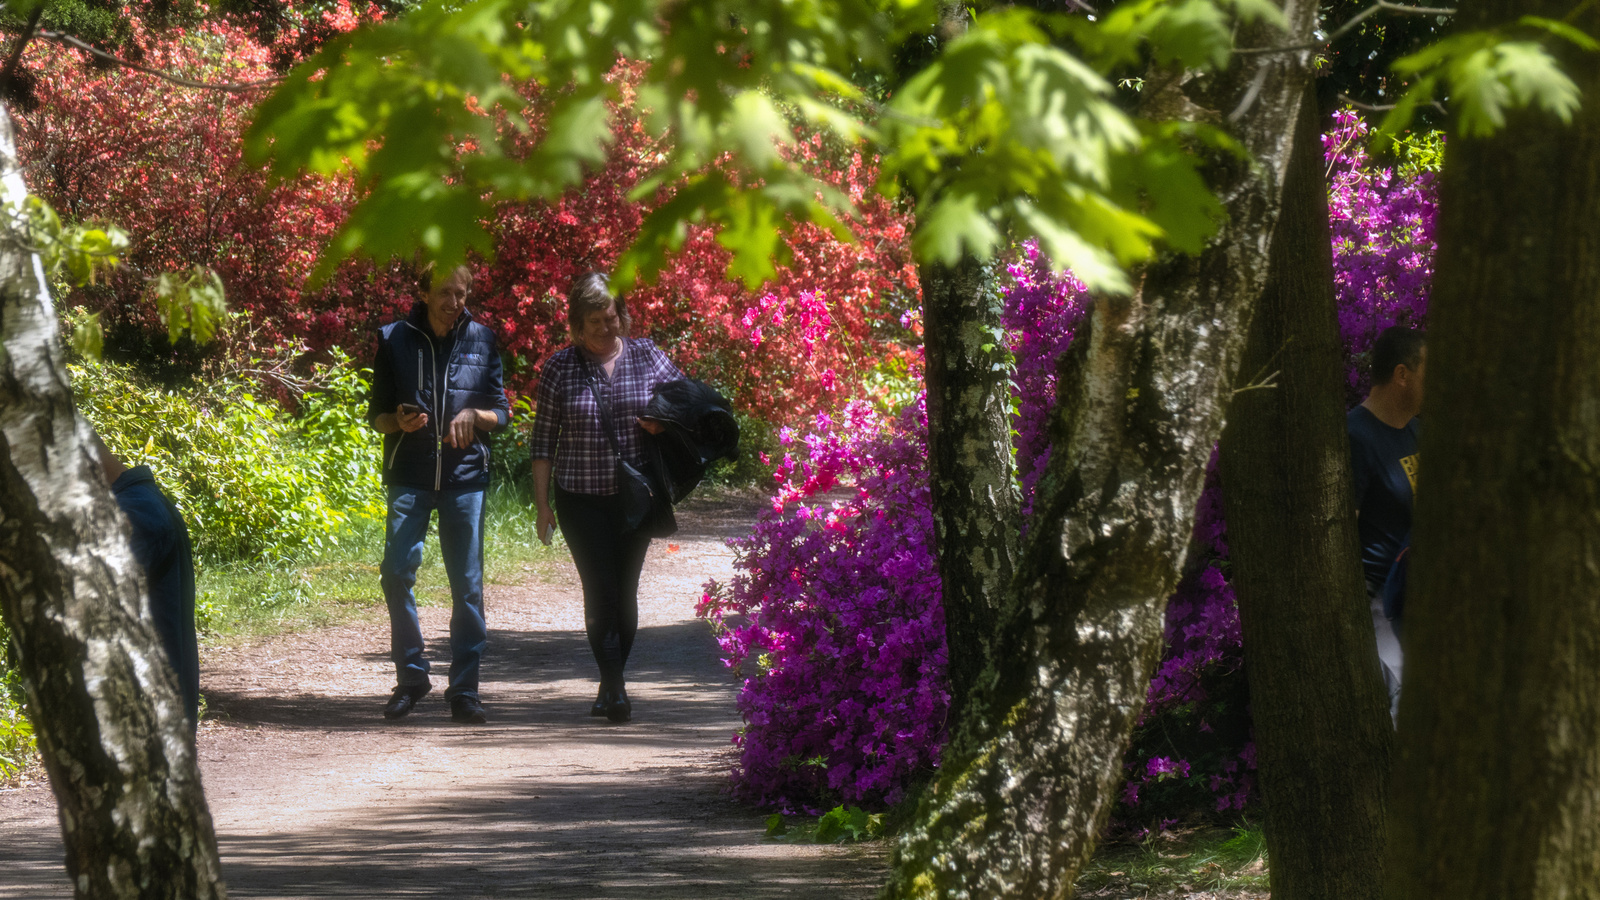 Jeli arborétum - Rhododendron sétaút